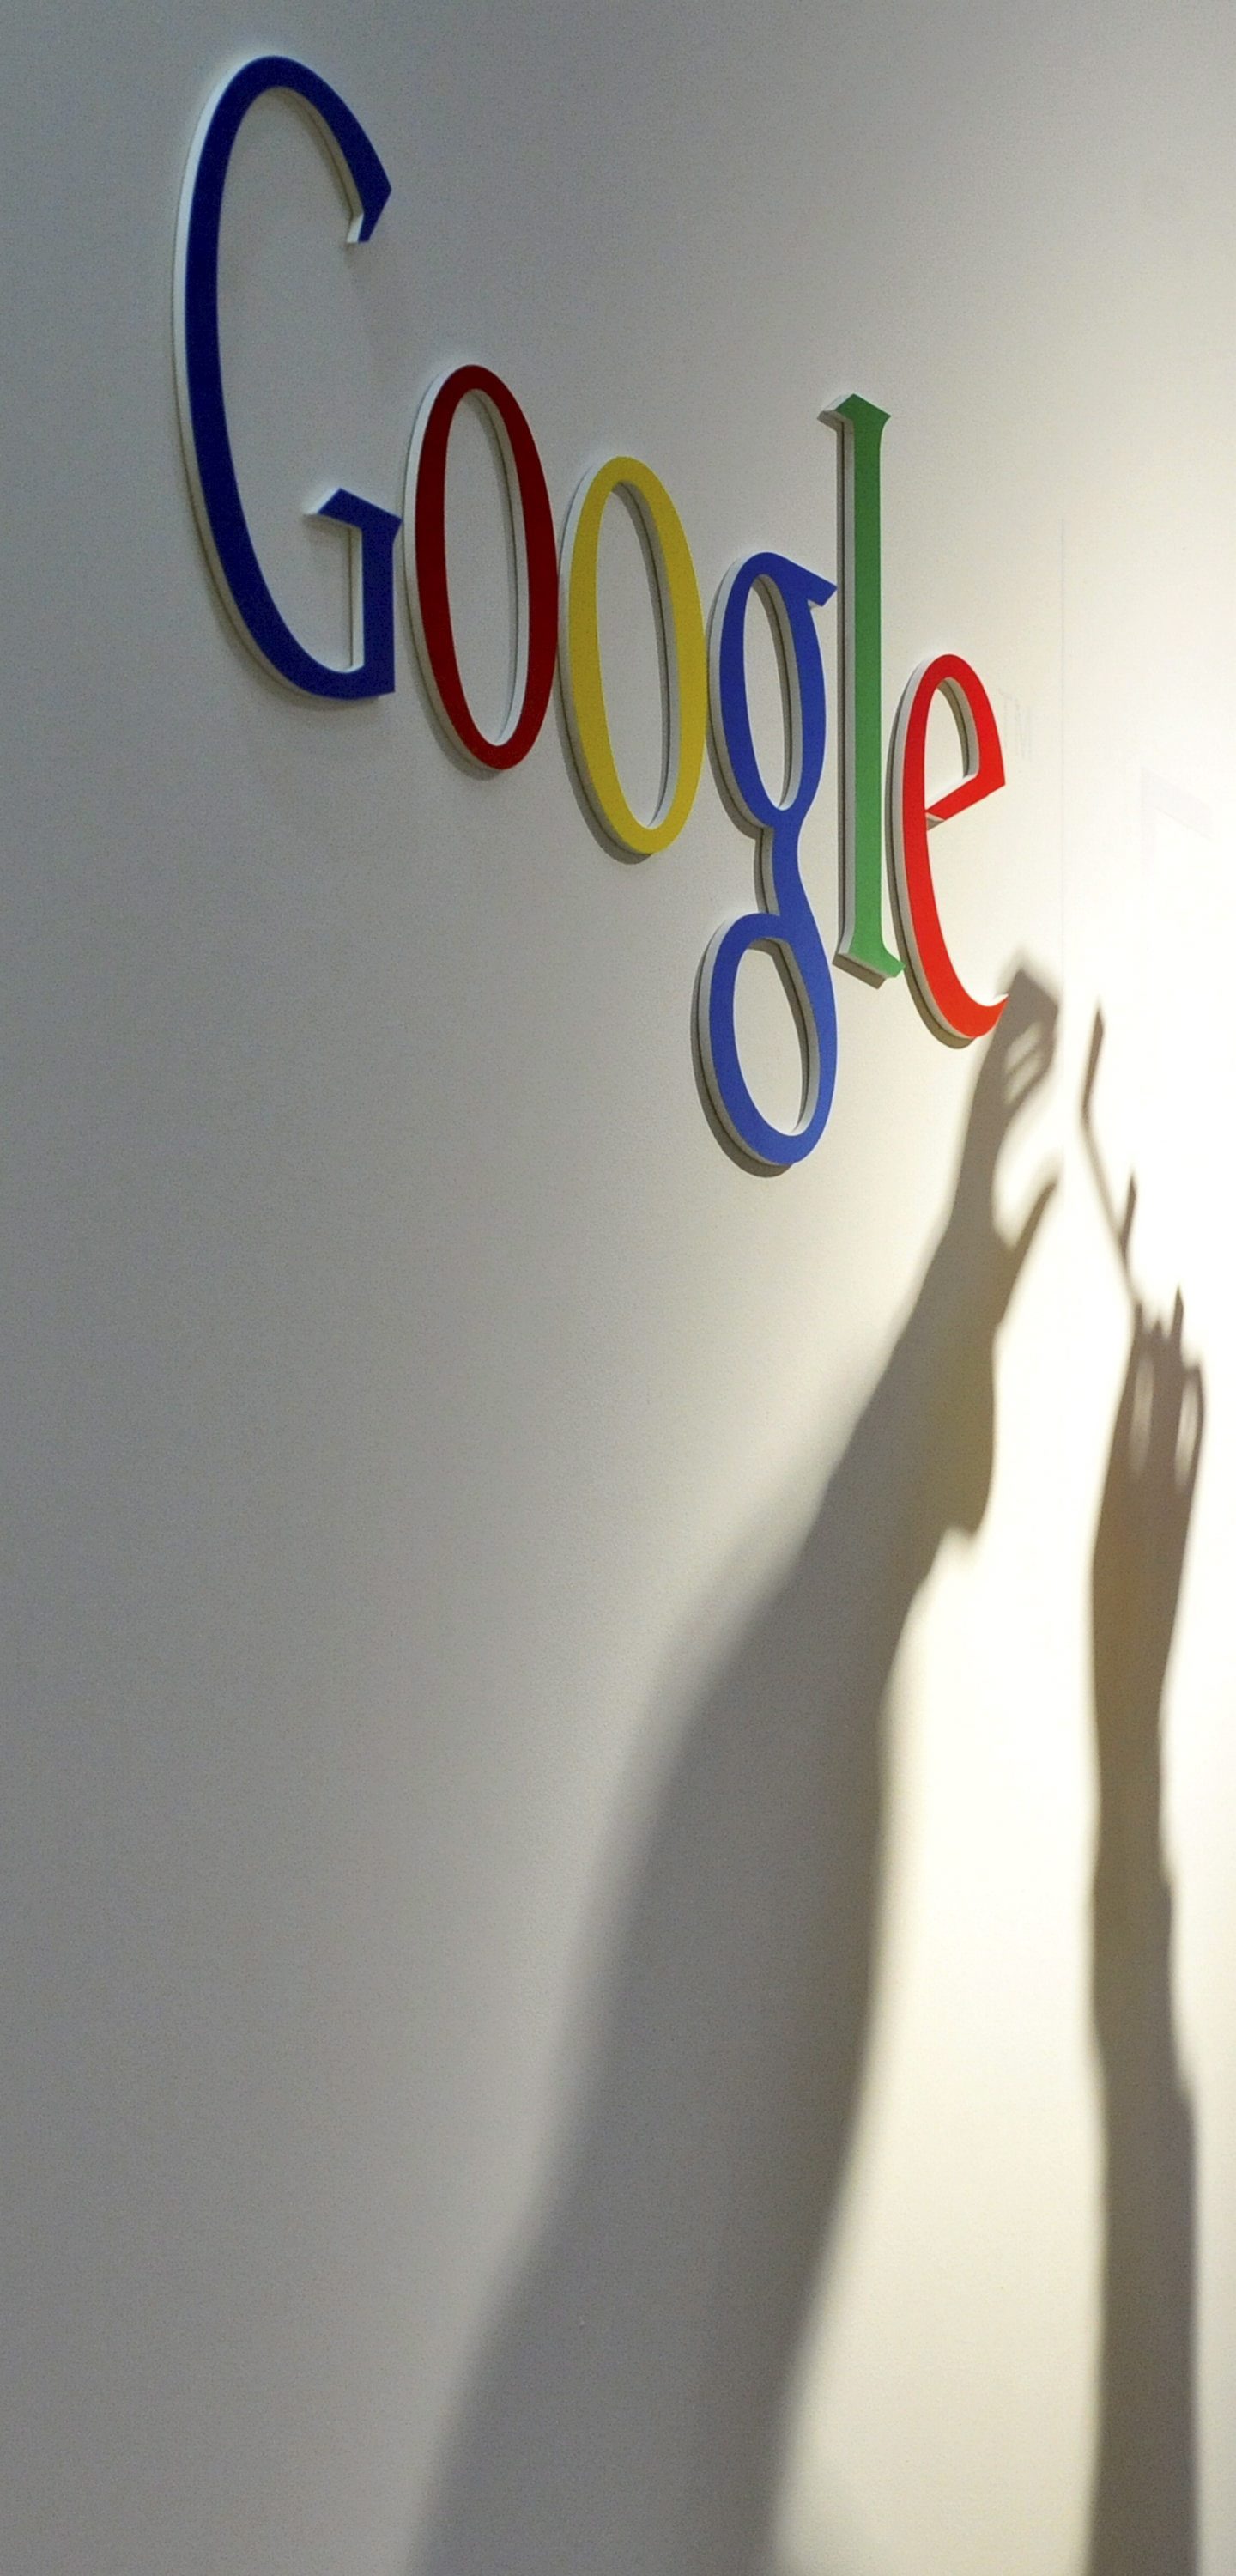 Топ 10: Най-търсеното в Google през 2014 г.